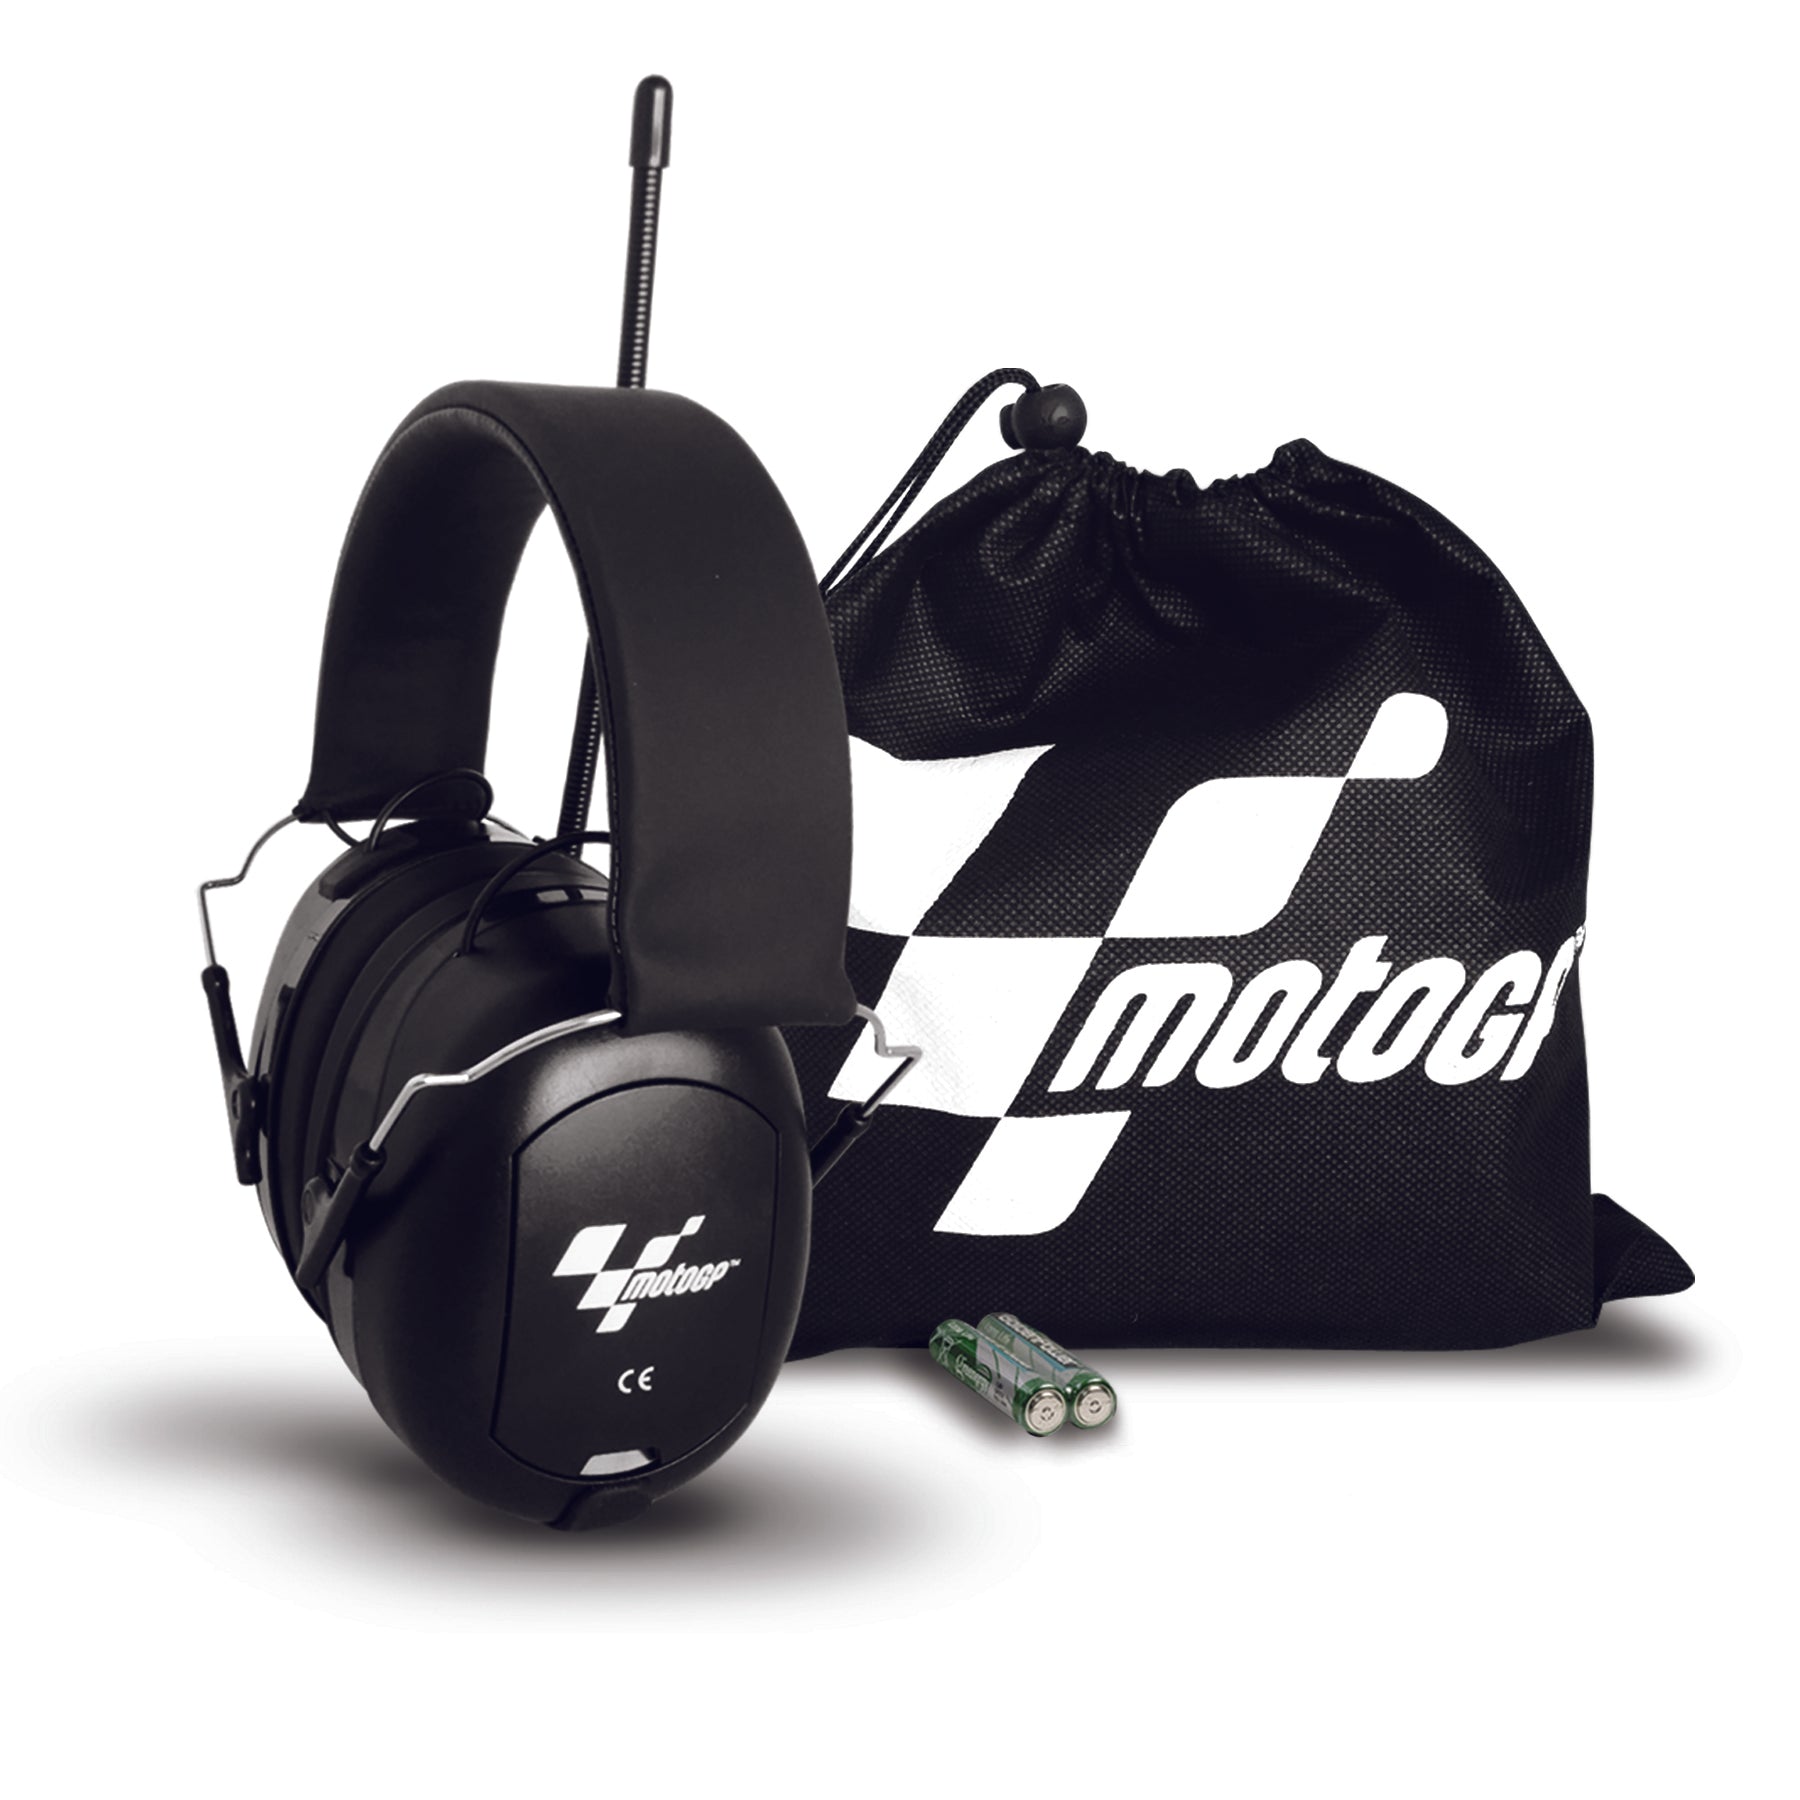 MotoGP Radio voor gehoor bescherming en muziek tijdens favoriete races – Alpine Hearing Protection